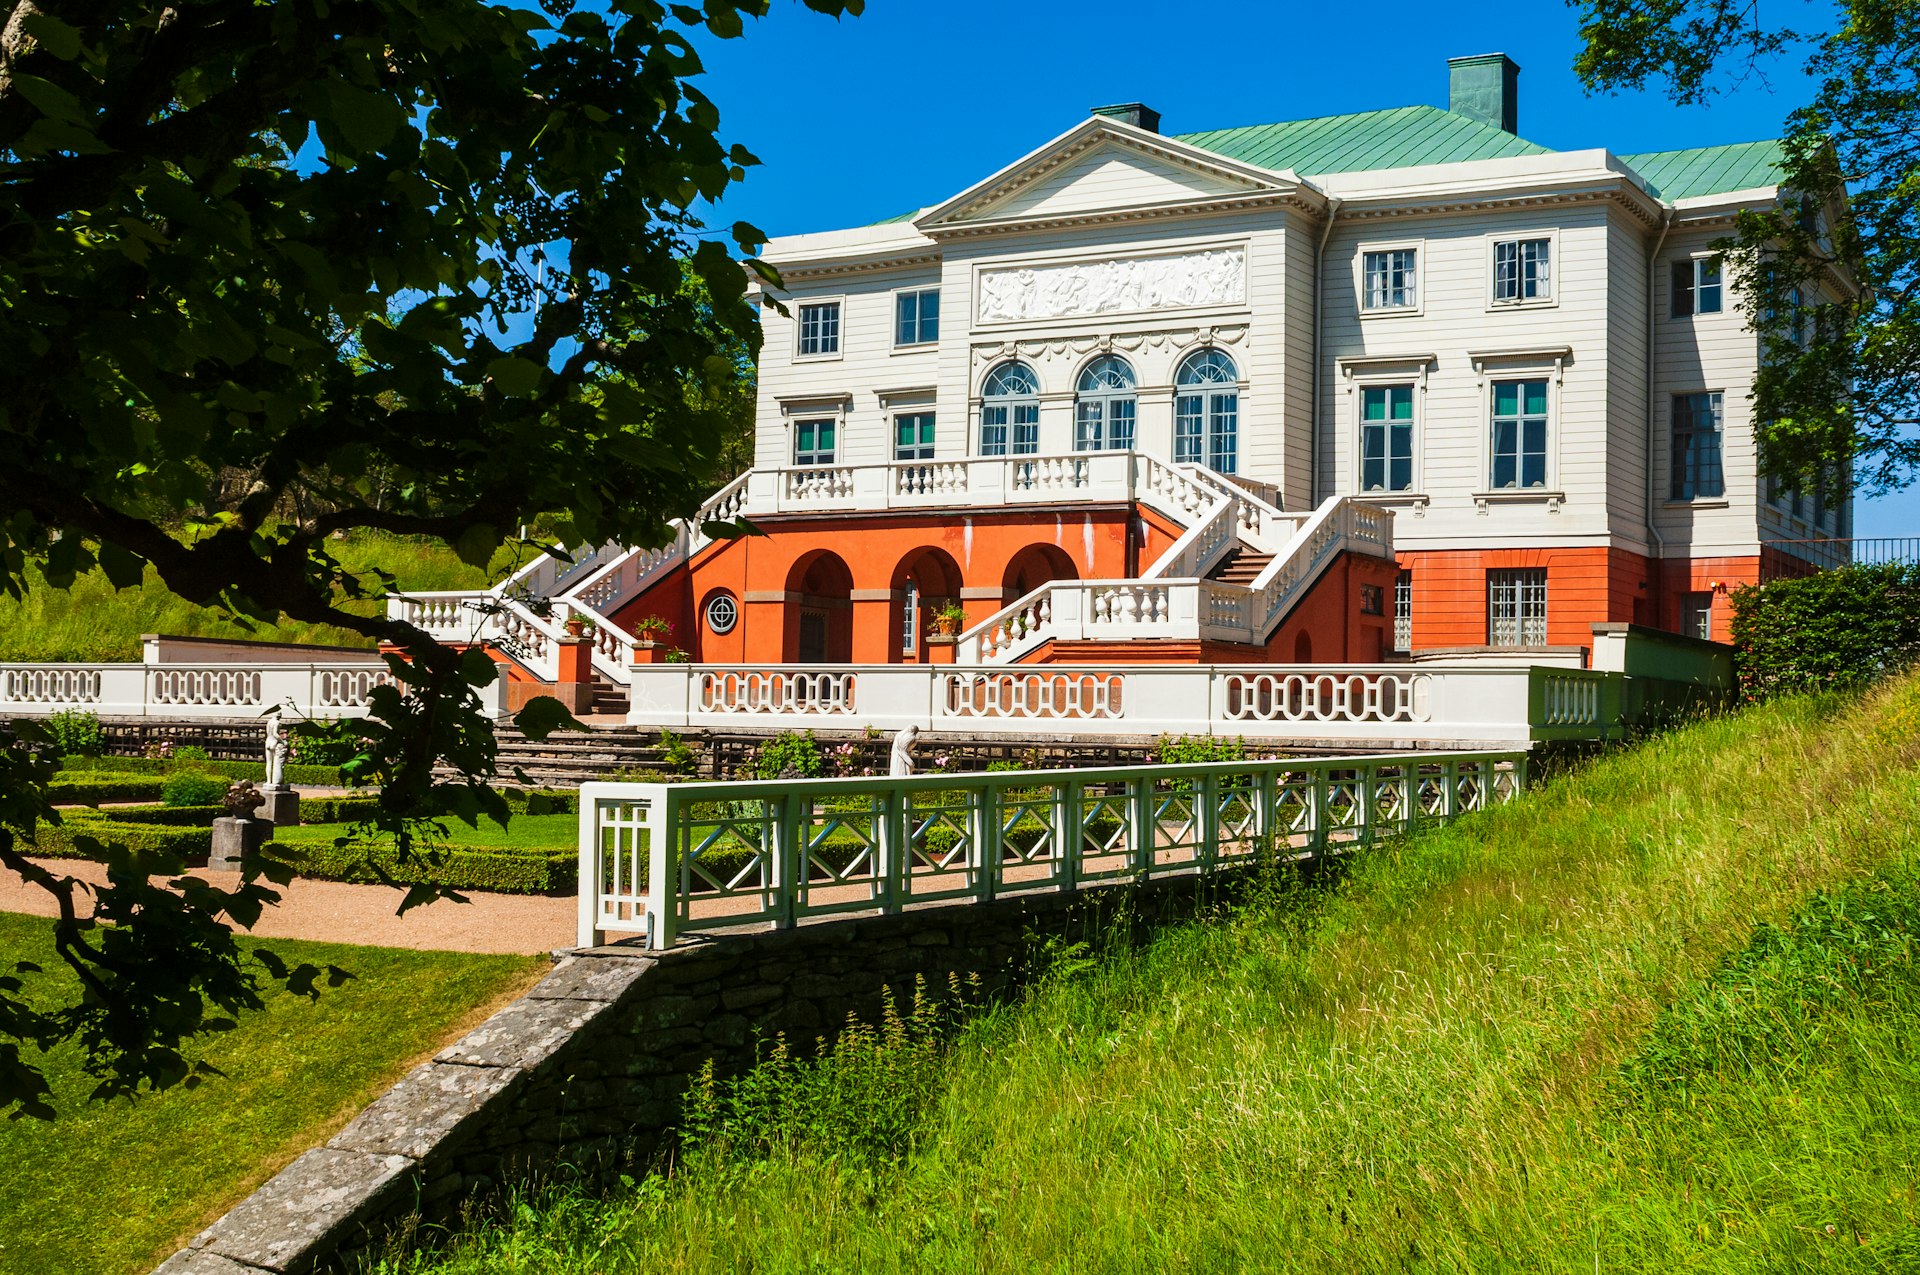 Gunnebo House in Mölndal, Sweden